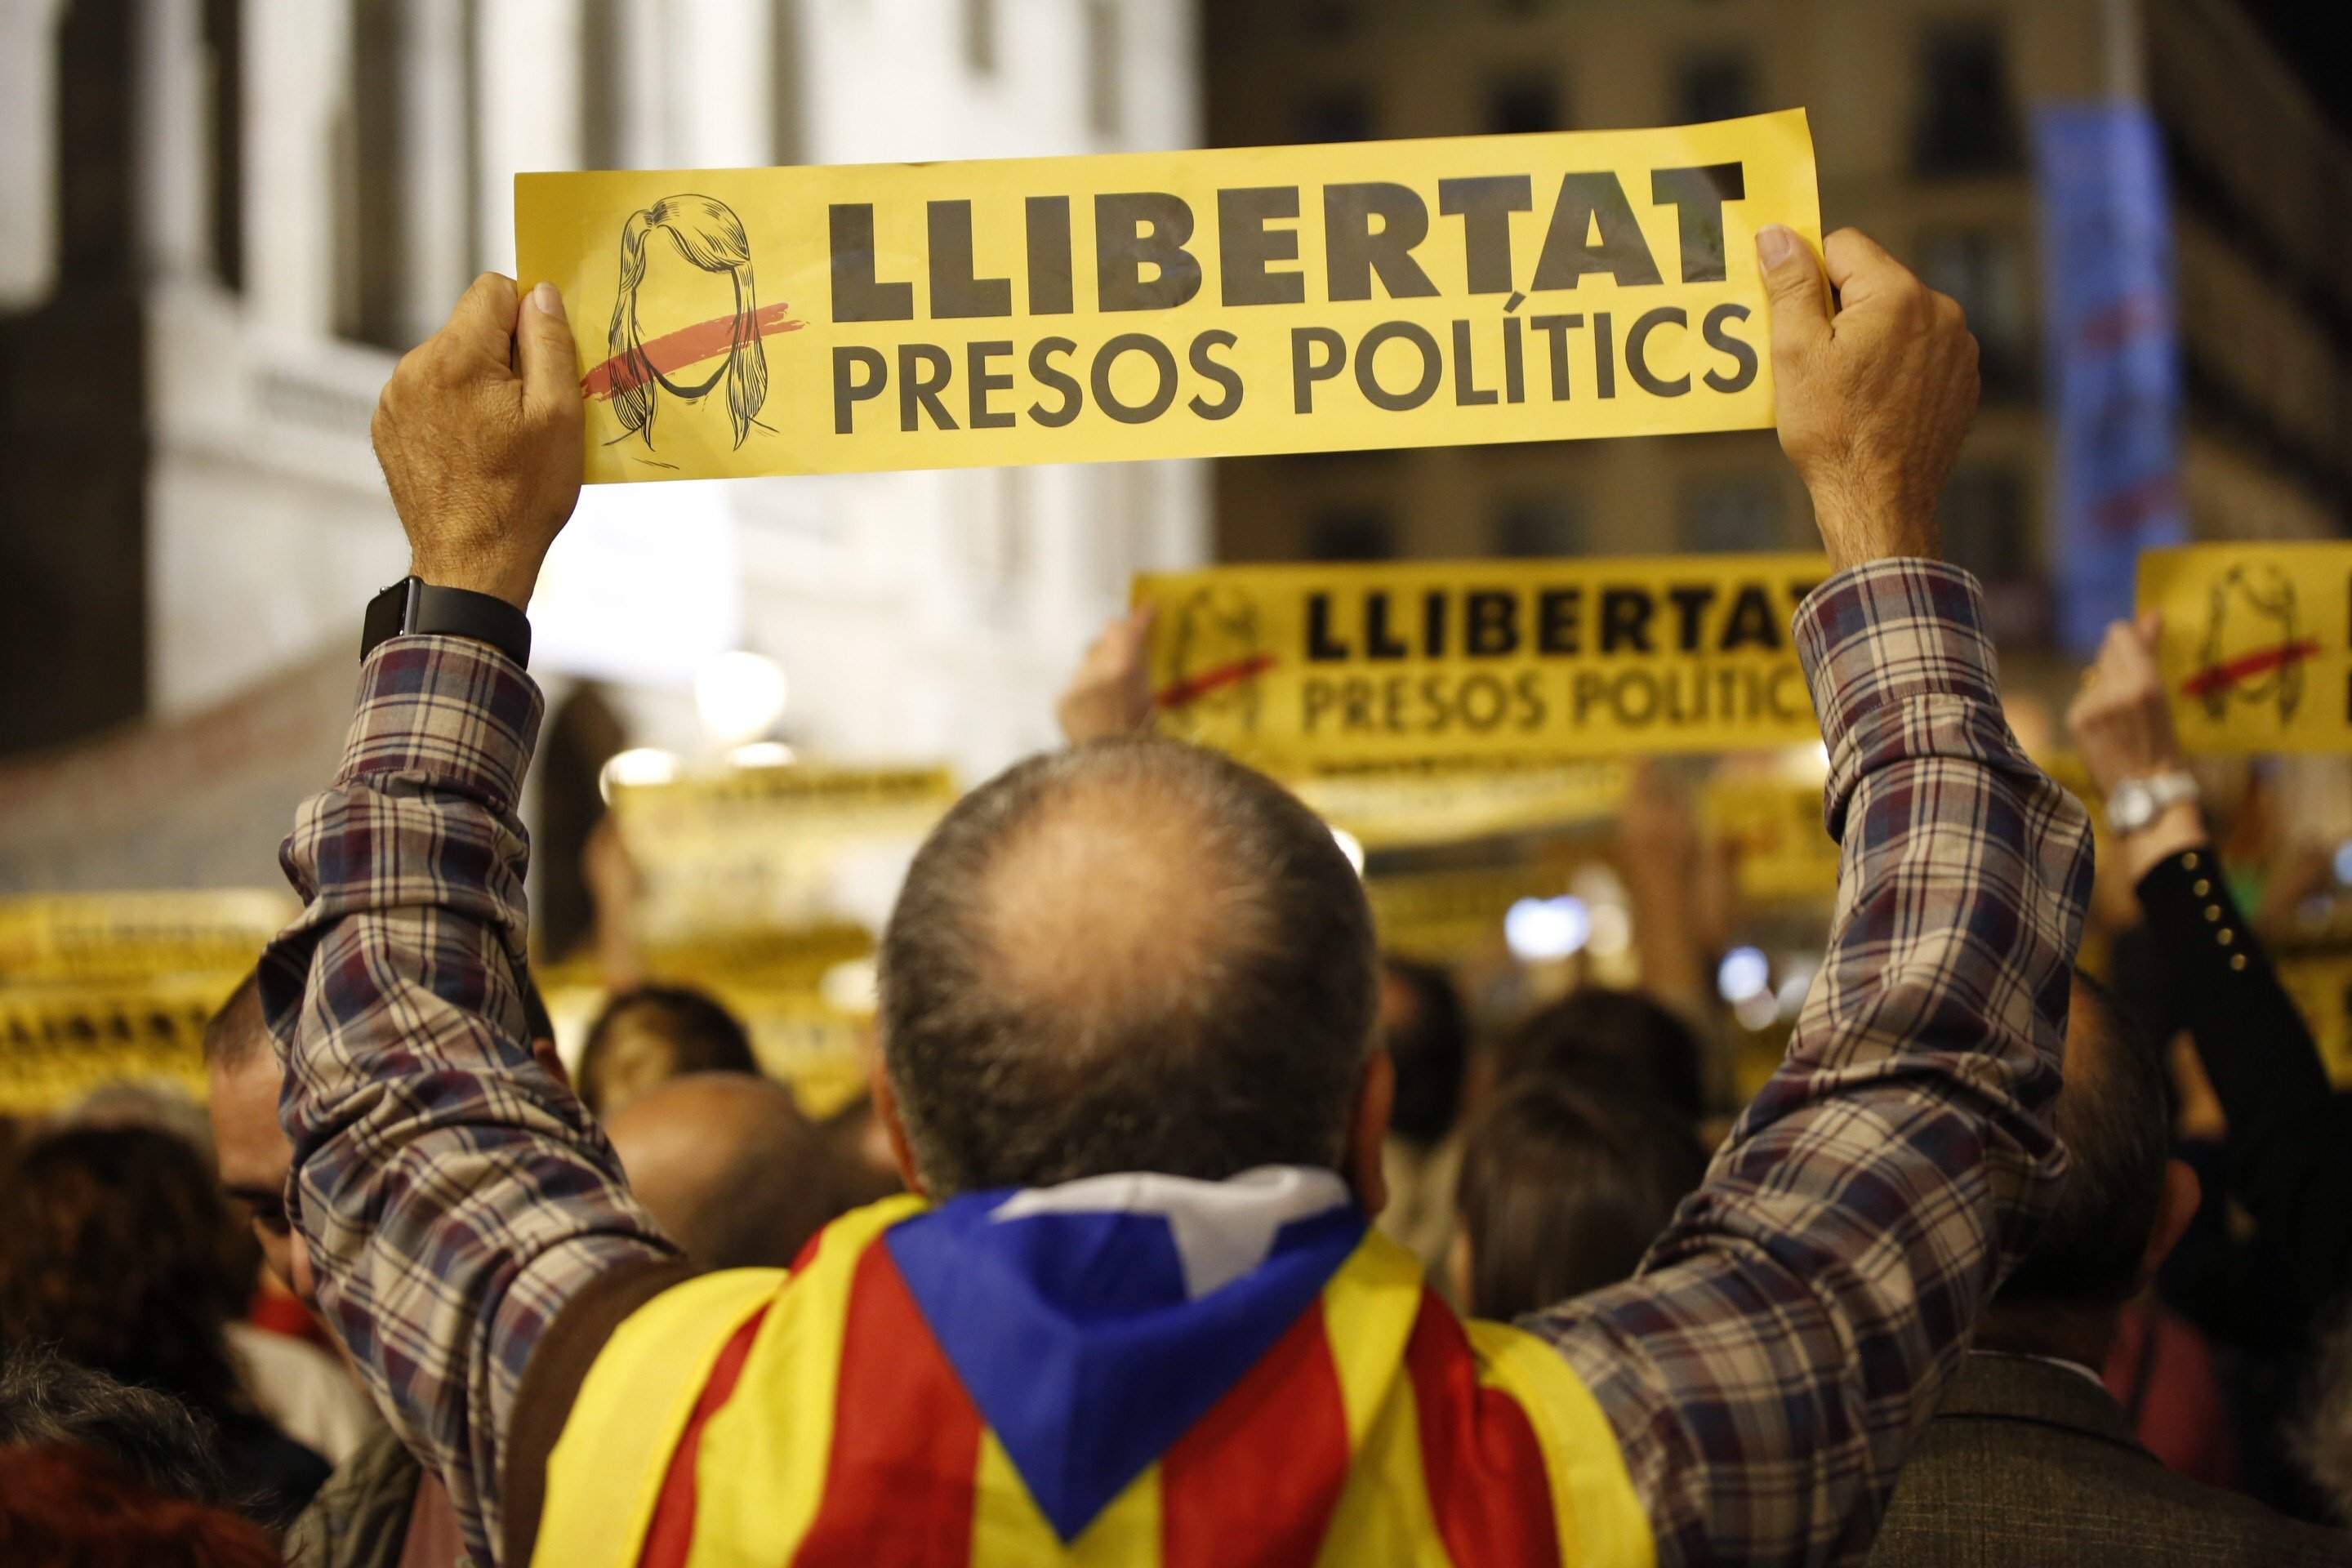 La Junta Electoral prohíbe a TV3 utilizar expresiones como "presos políticos"